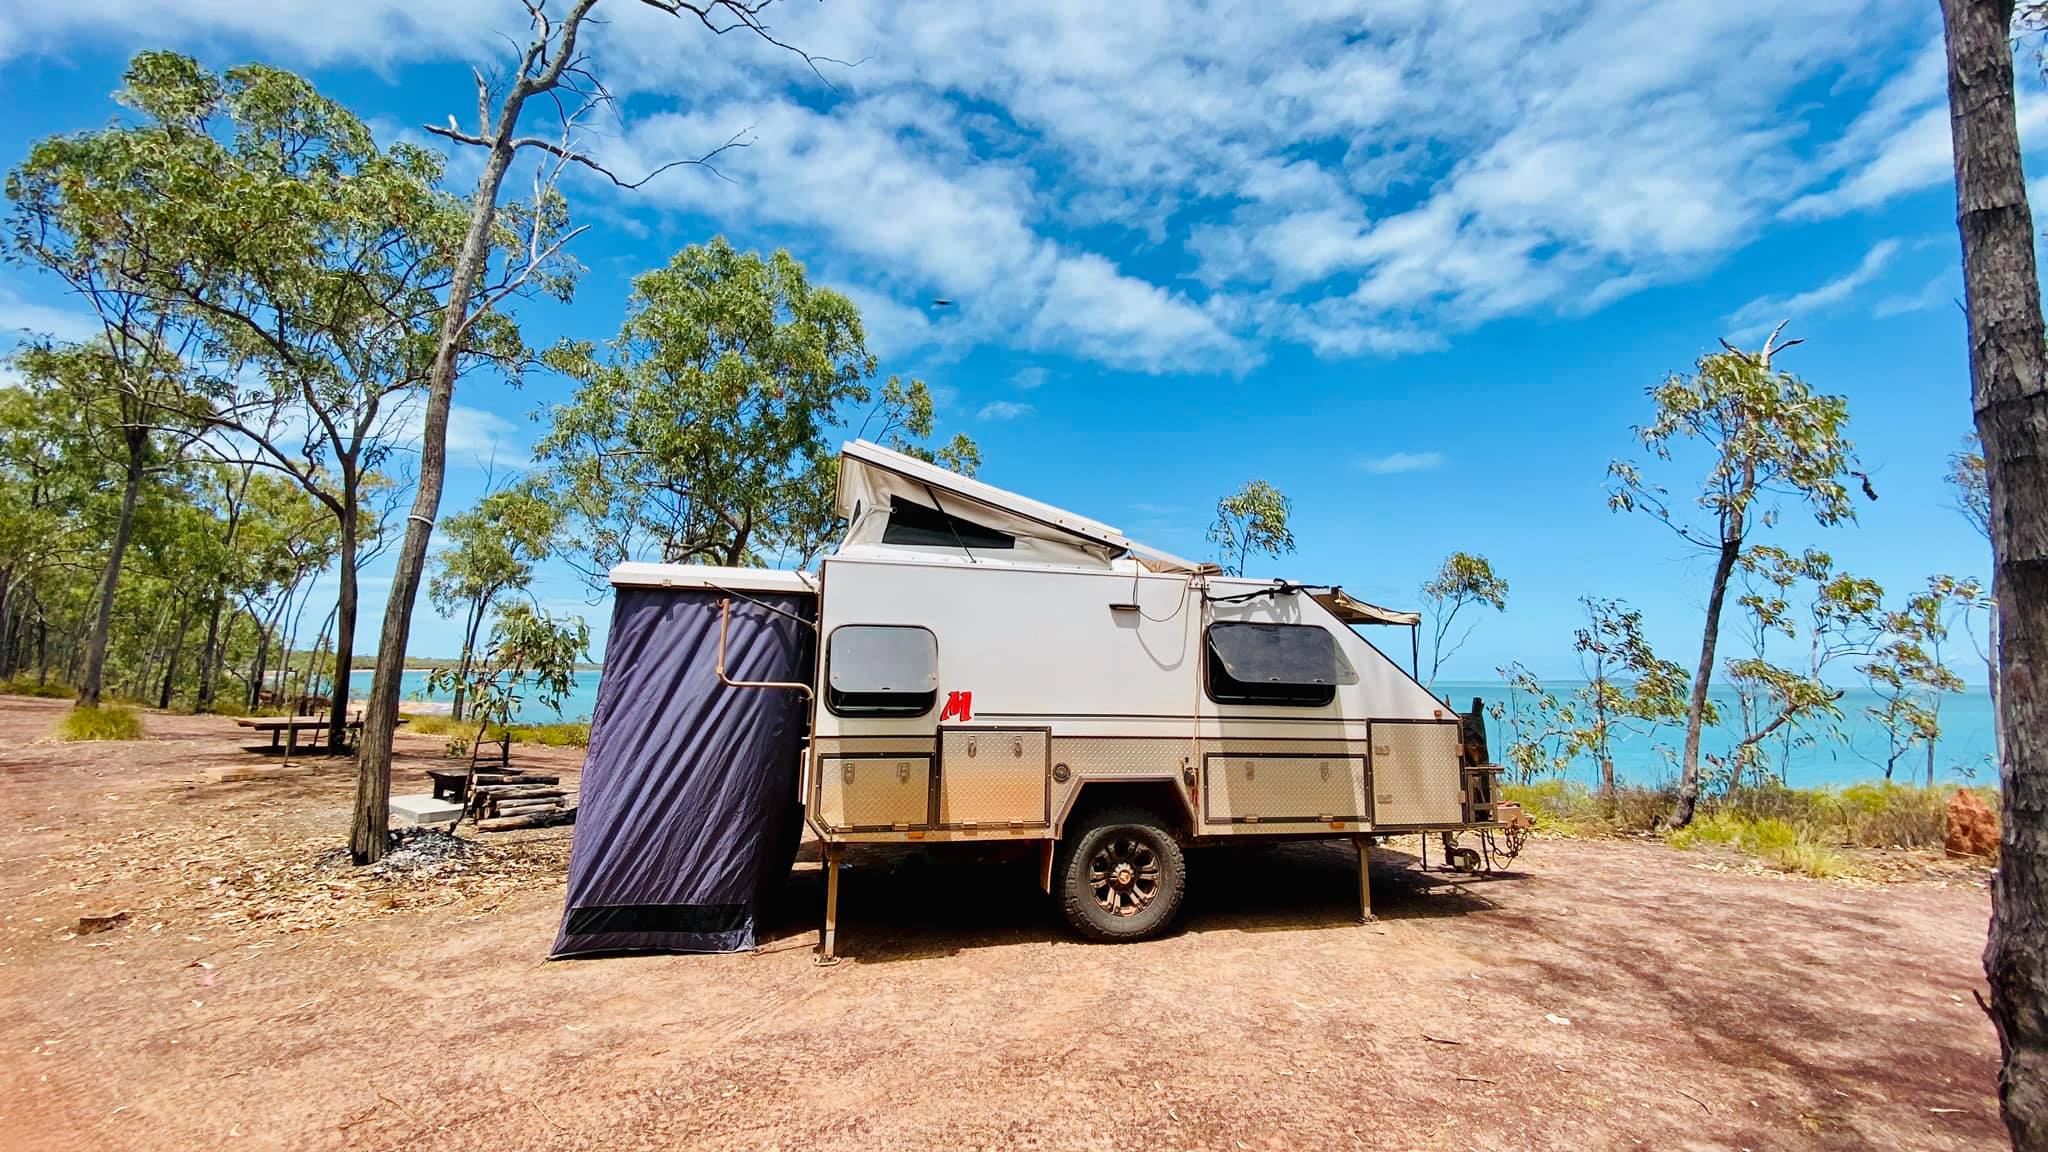 Modcon RV off road hybrid camper trailers C3 shower room set up